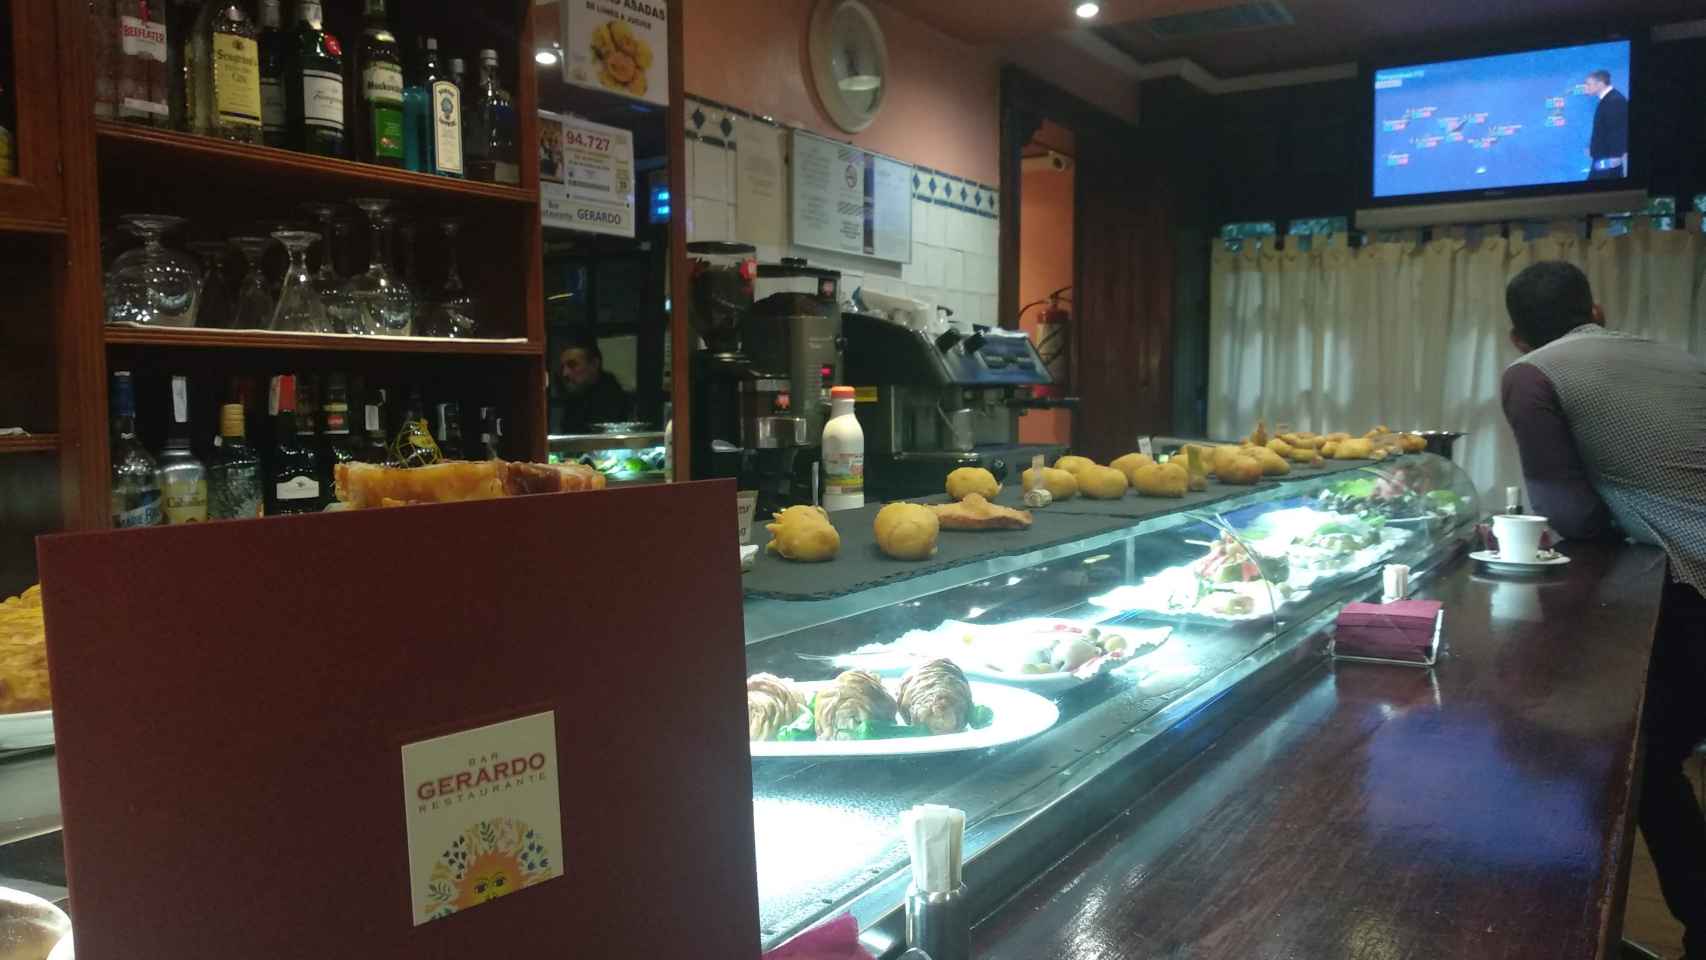 El bar Gerardo es un clásico y un referente culinario en el barrio de Delicias.